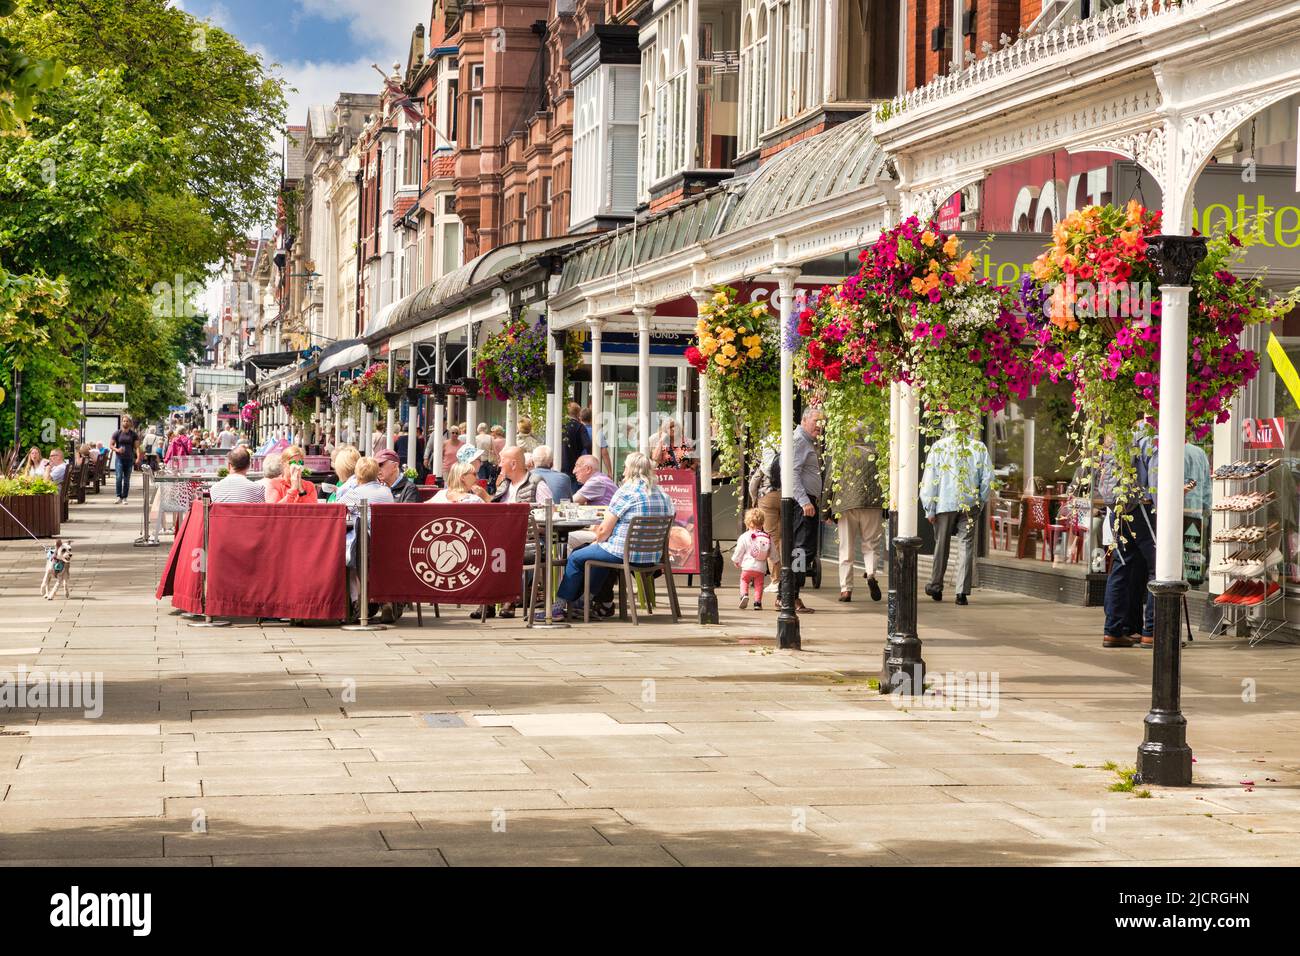 14 juillet 2019: Southport, Merseyside, Royaume-Uni - Lord Street, la principale rue commerçante de la ville balnéaire, avec un café Costa, beaucoup de personnes... Banque D'Images